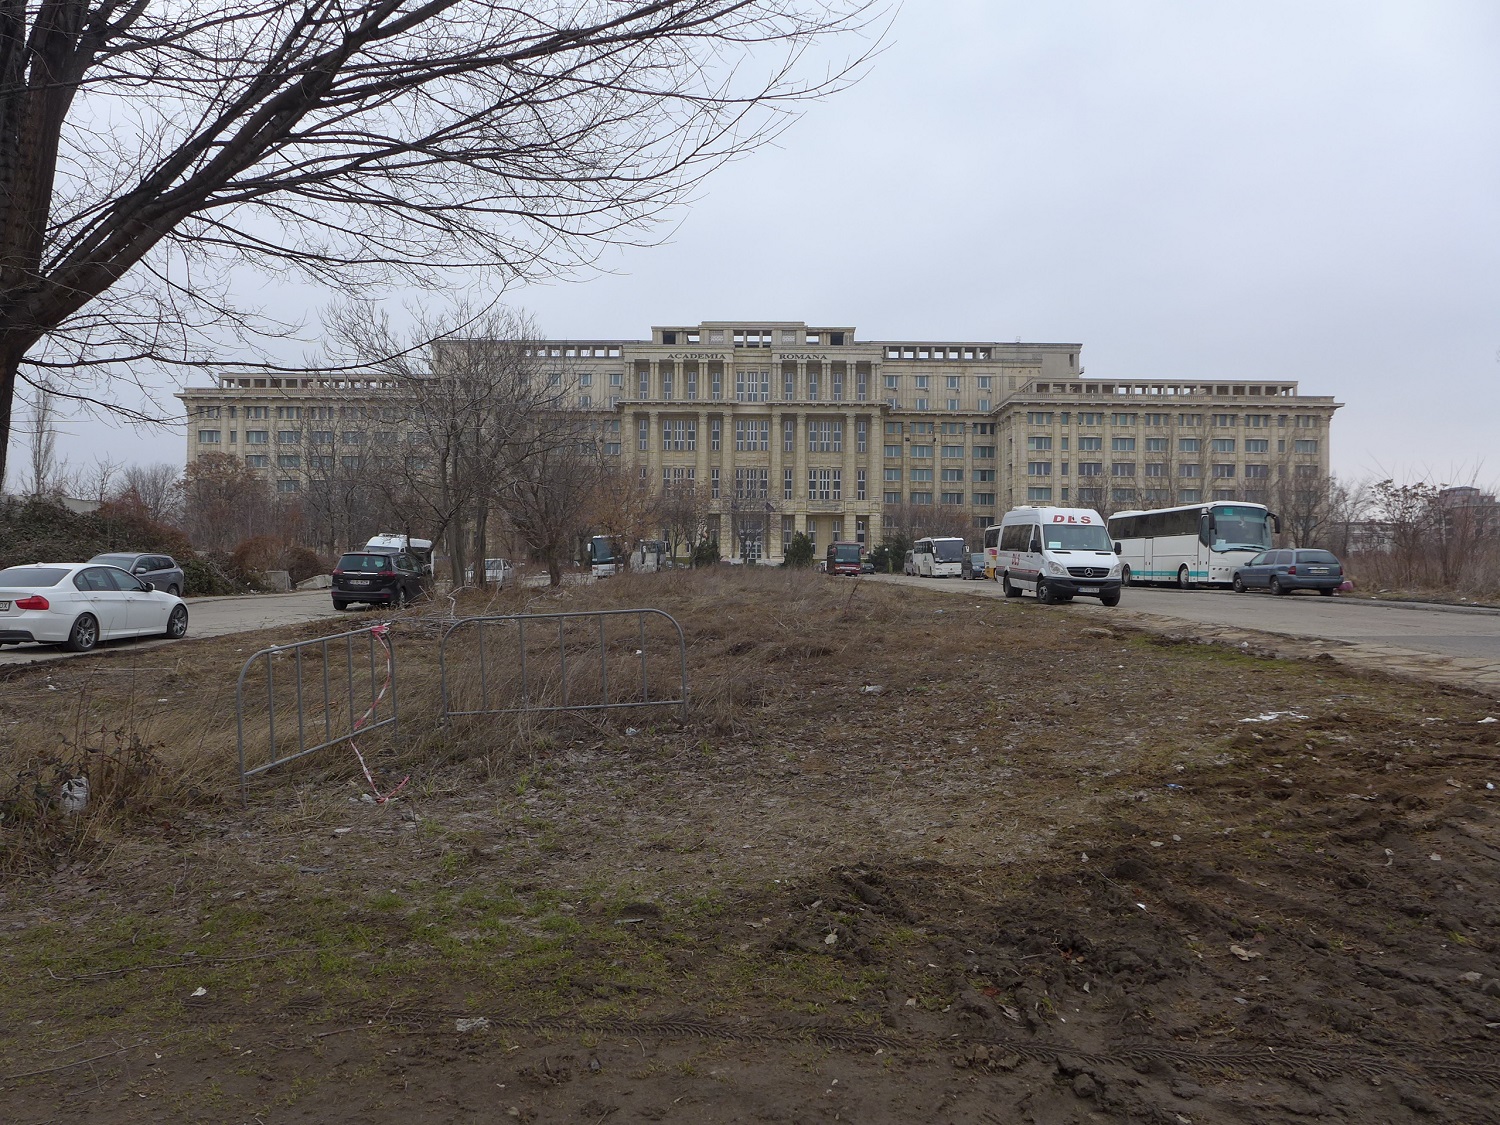 L’Académie roumaine est un énorme bâtiment, situé juste à côté du Palais du Parlement. Construits tous les deux sous Ceausescu, c’est le même style architectural.